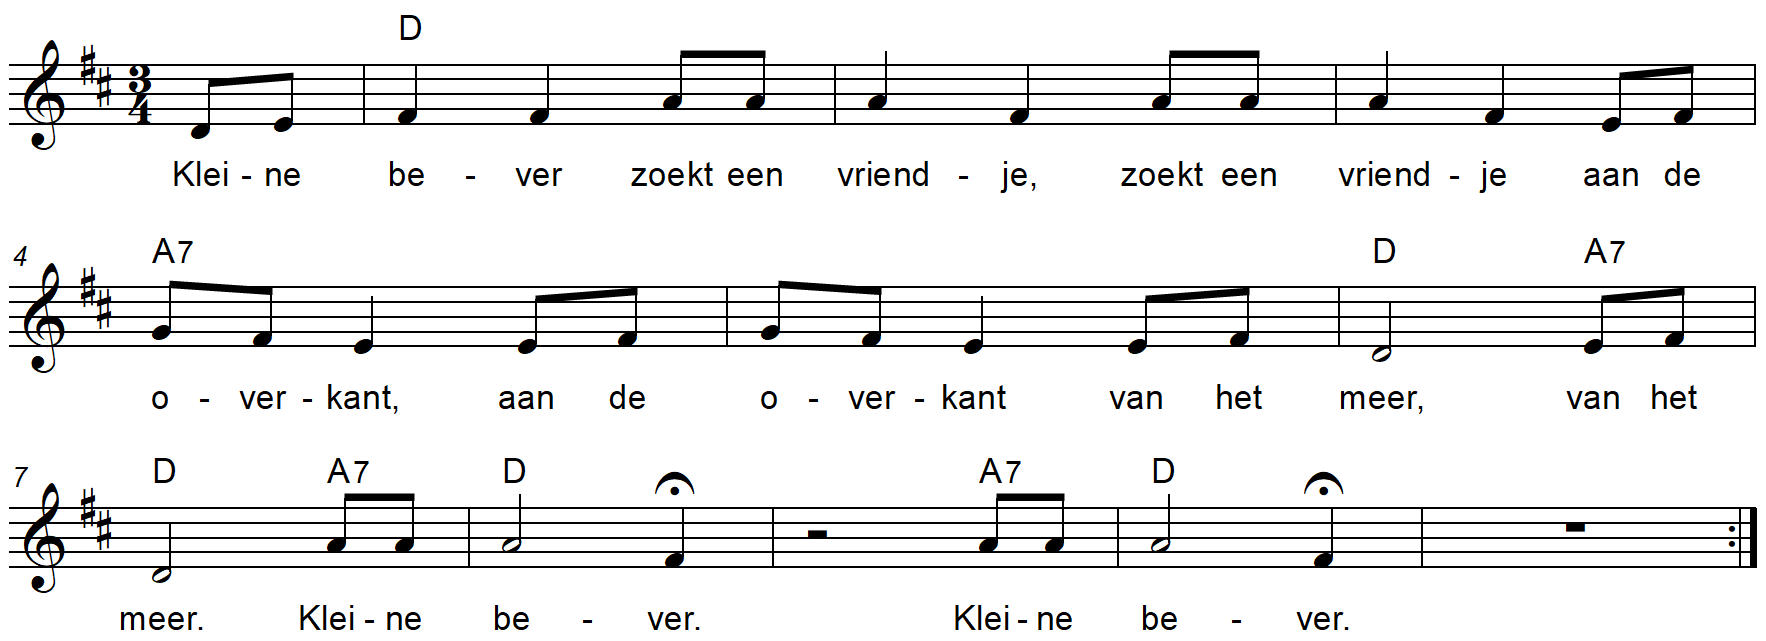 'Kleine Bever en de echo', lied van Marjolijn Daudt met voor- en nazang (echo), en passend bij het gelijknamige prentenboek.